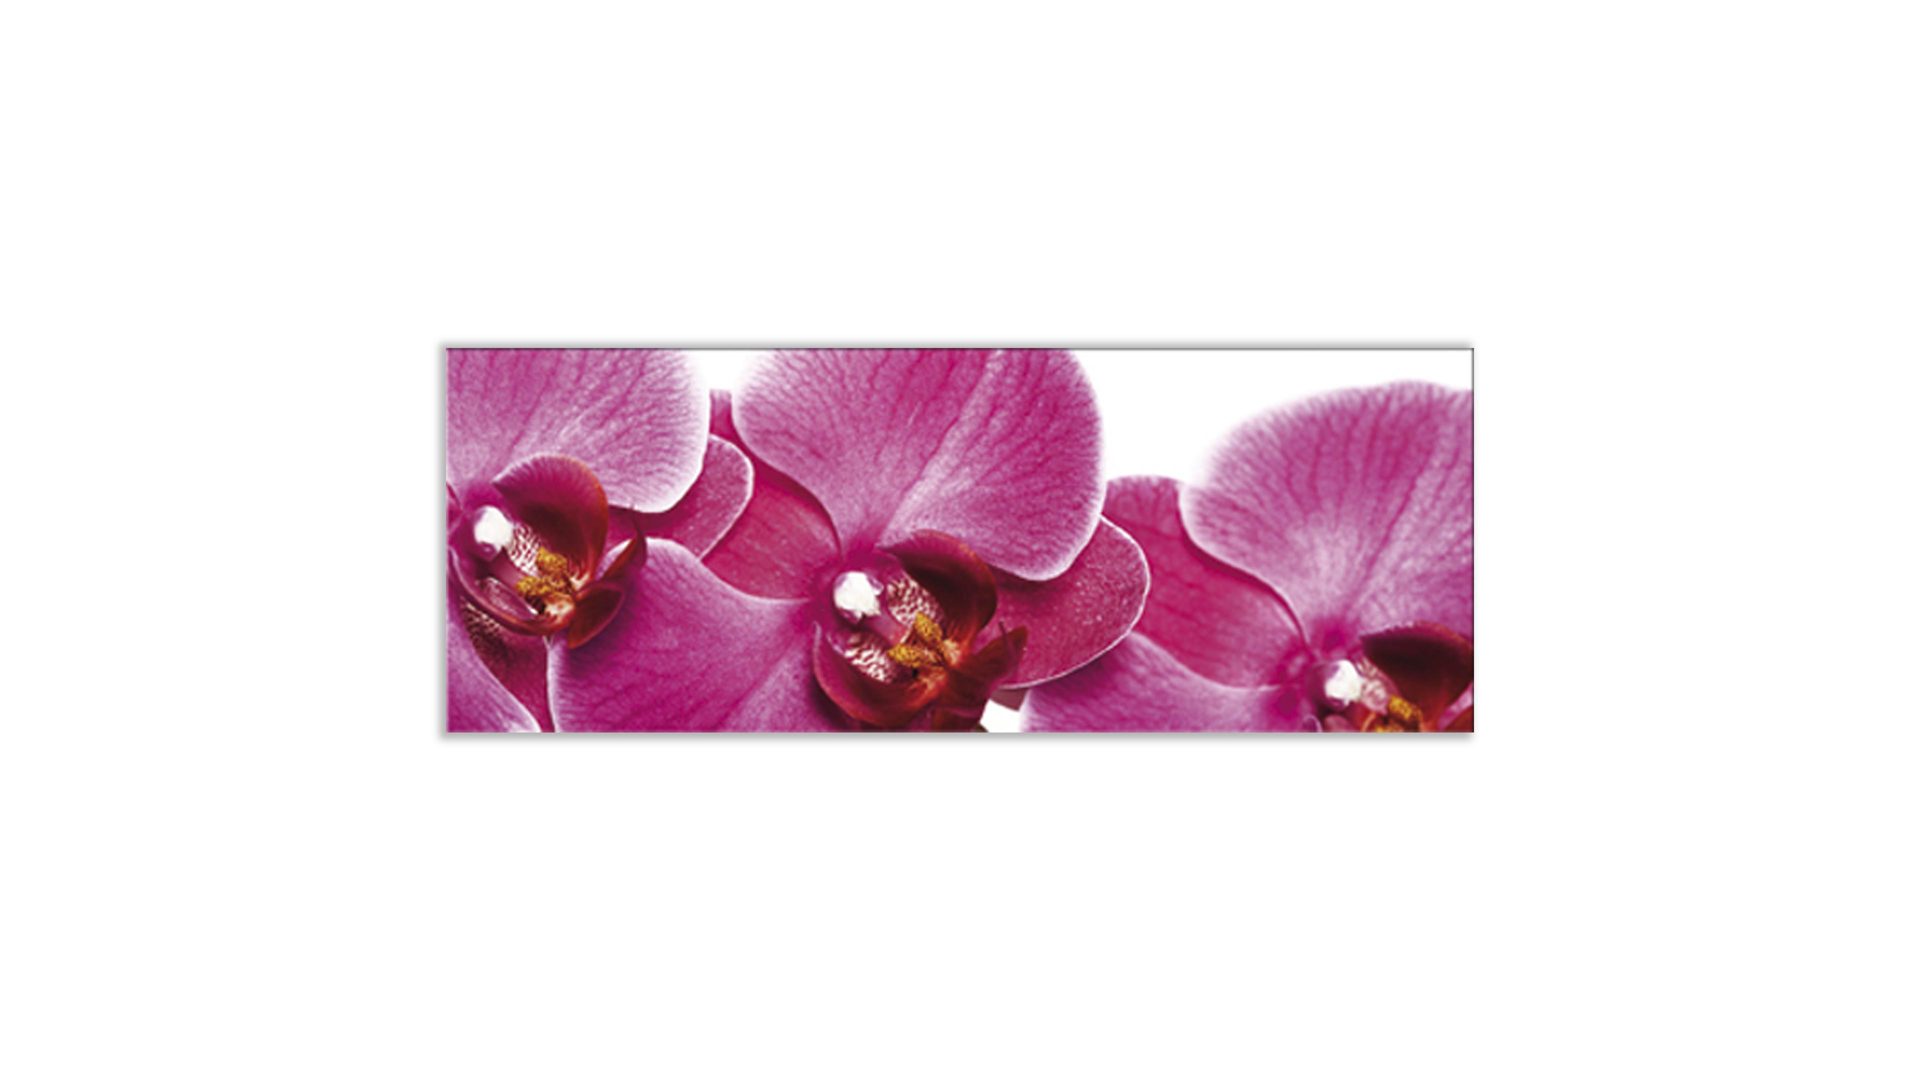 Glasbild Ars graphica aus Glas in Pink Glasbild Pink Orchidee 4 mm Floatglas mit Motiv, ca. 80 x 30 cm